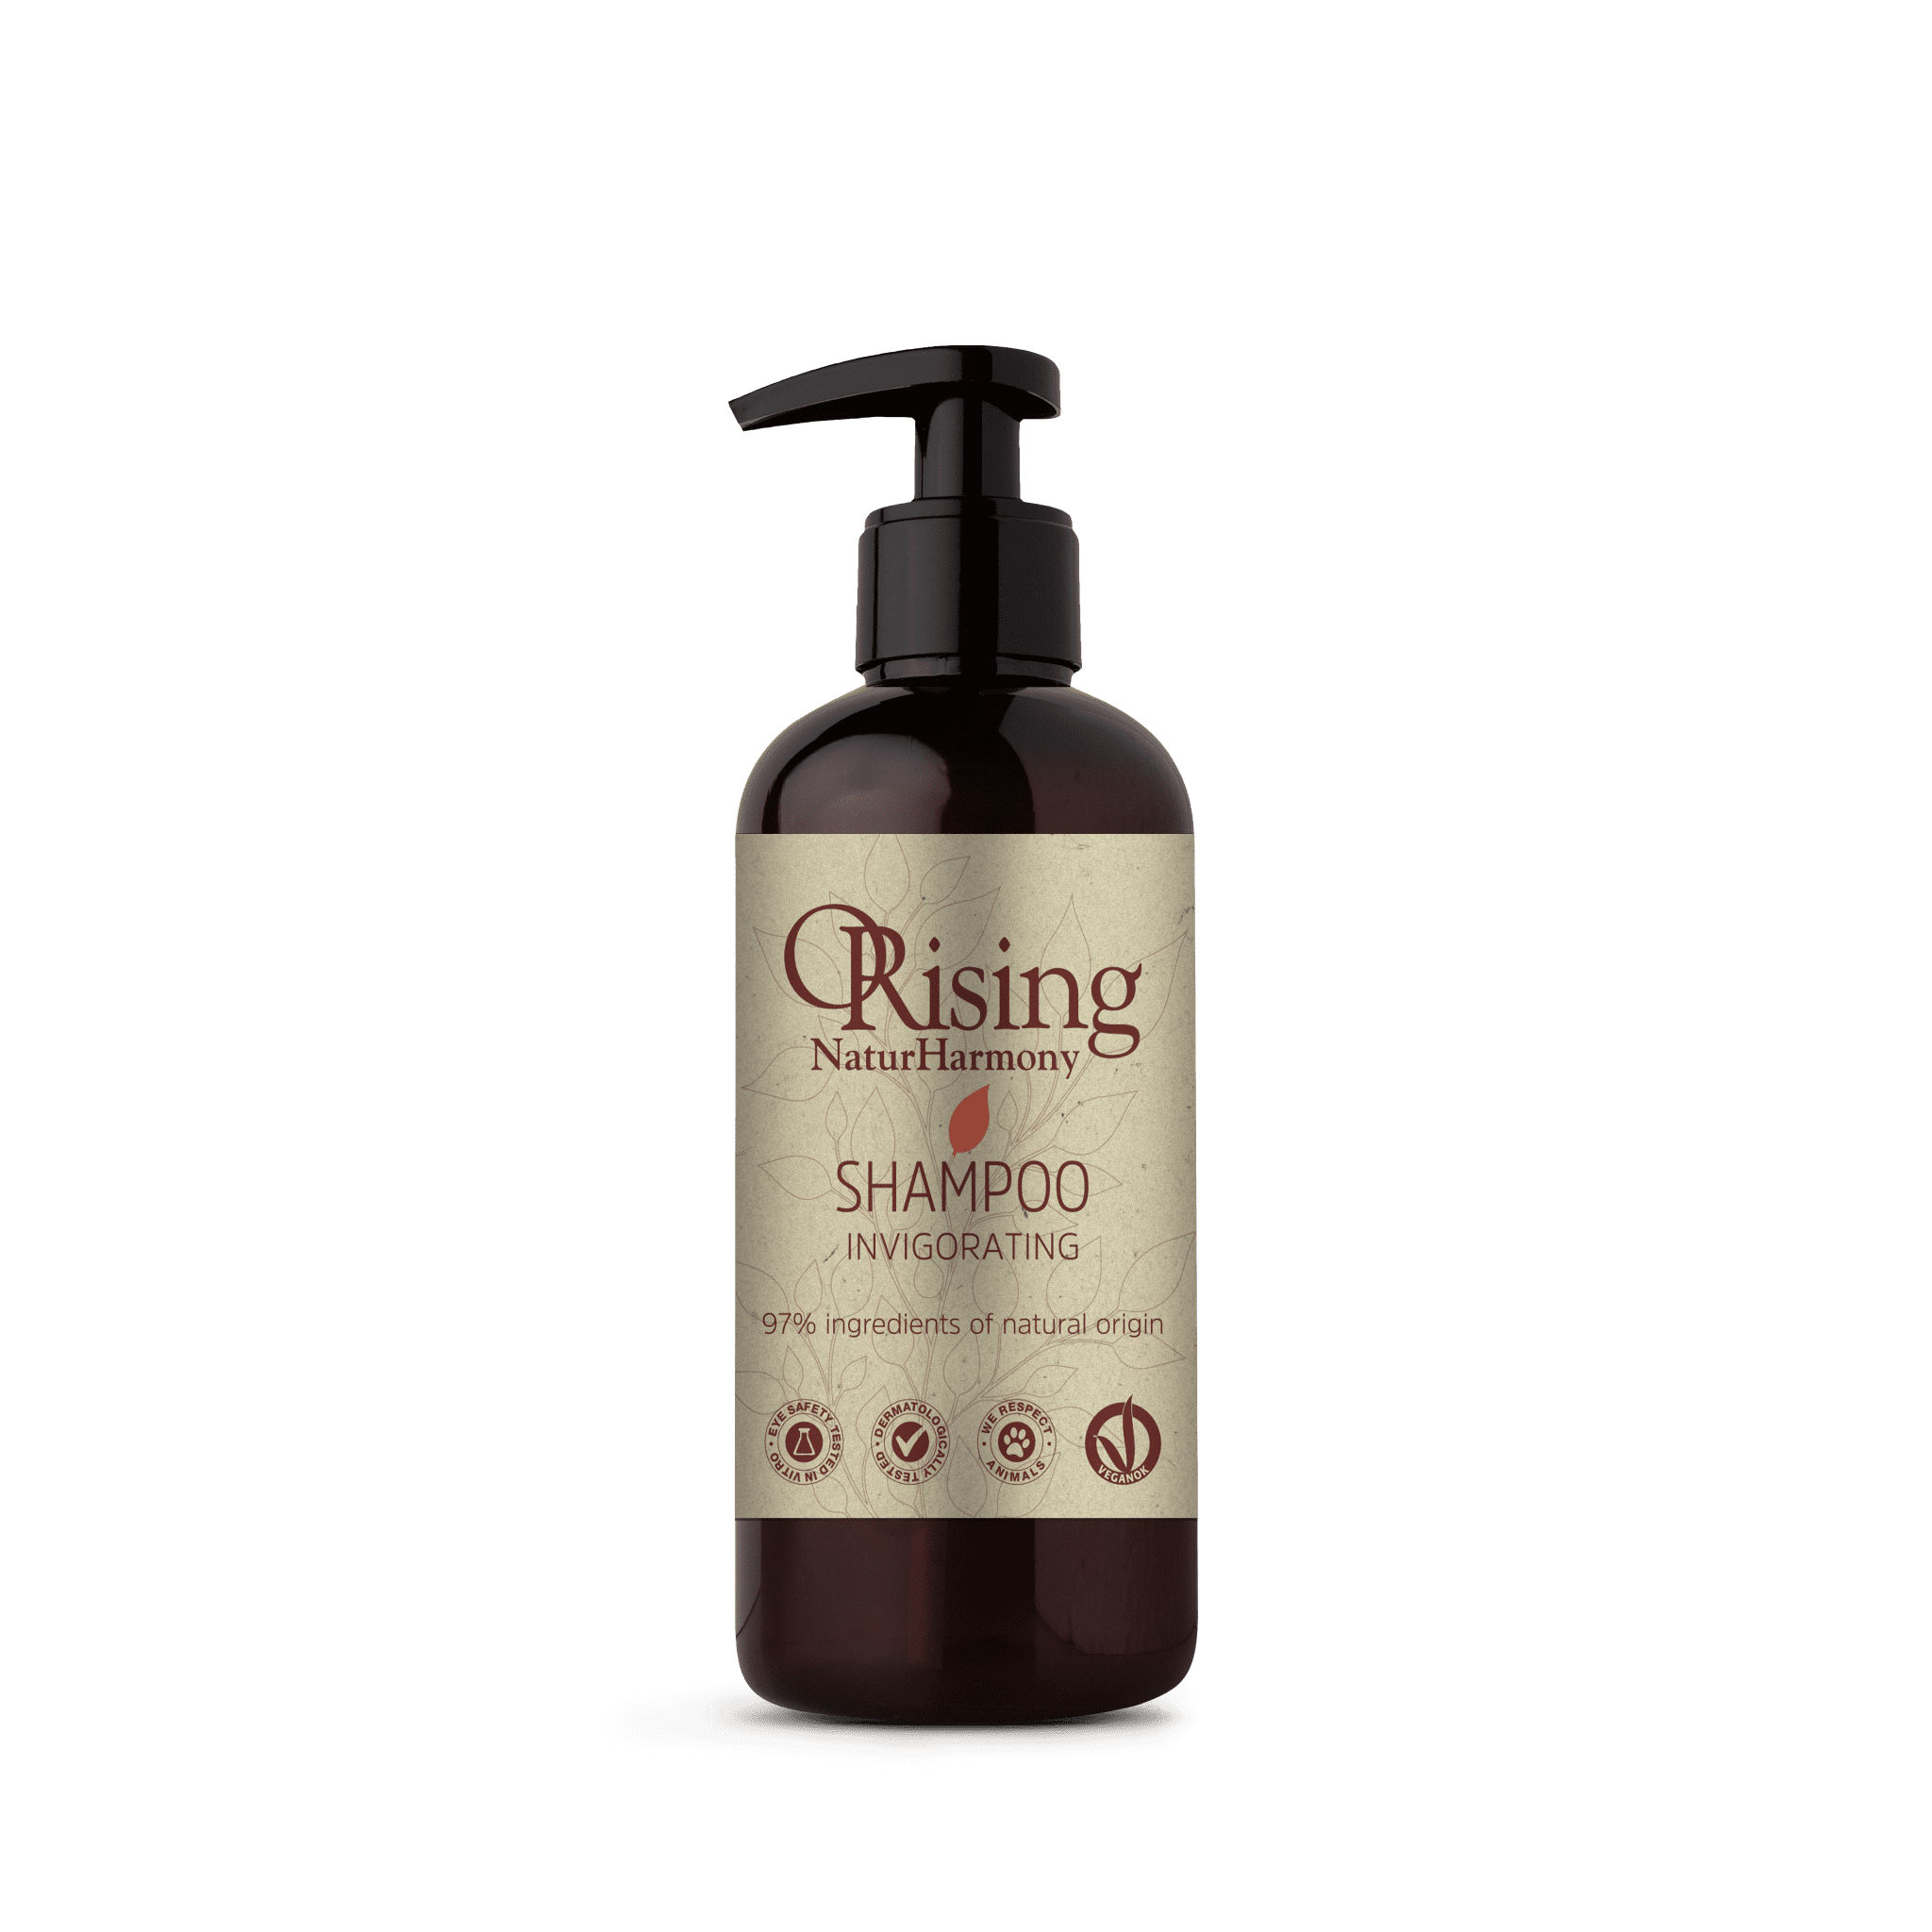 Orising Invigorating szampon odżywczy do słosów